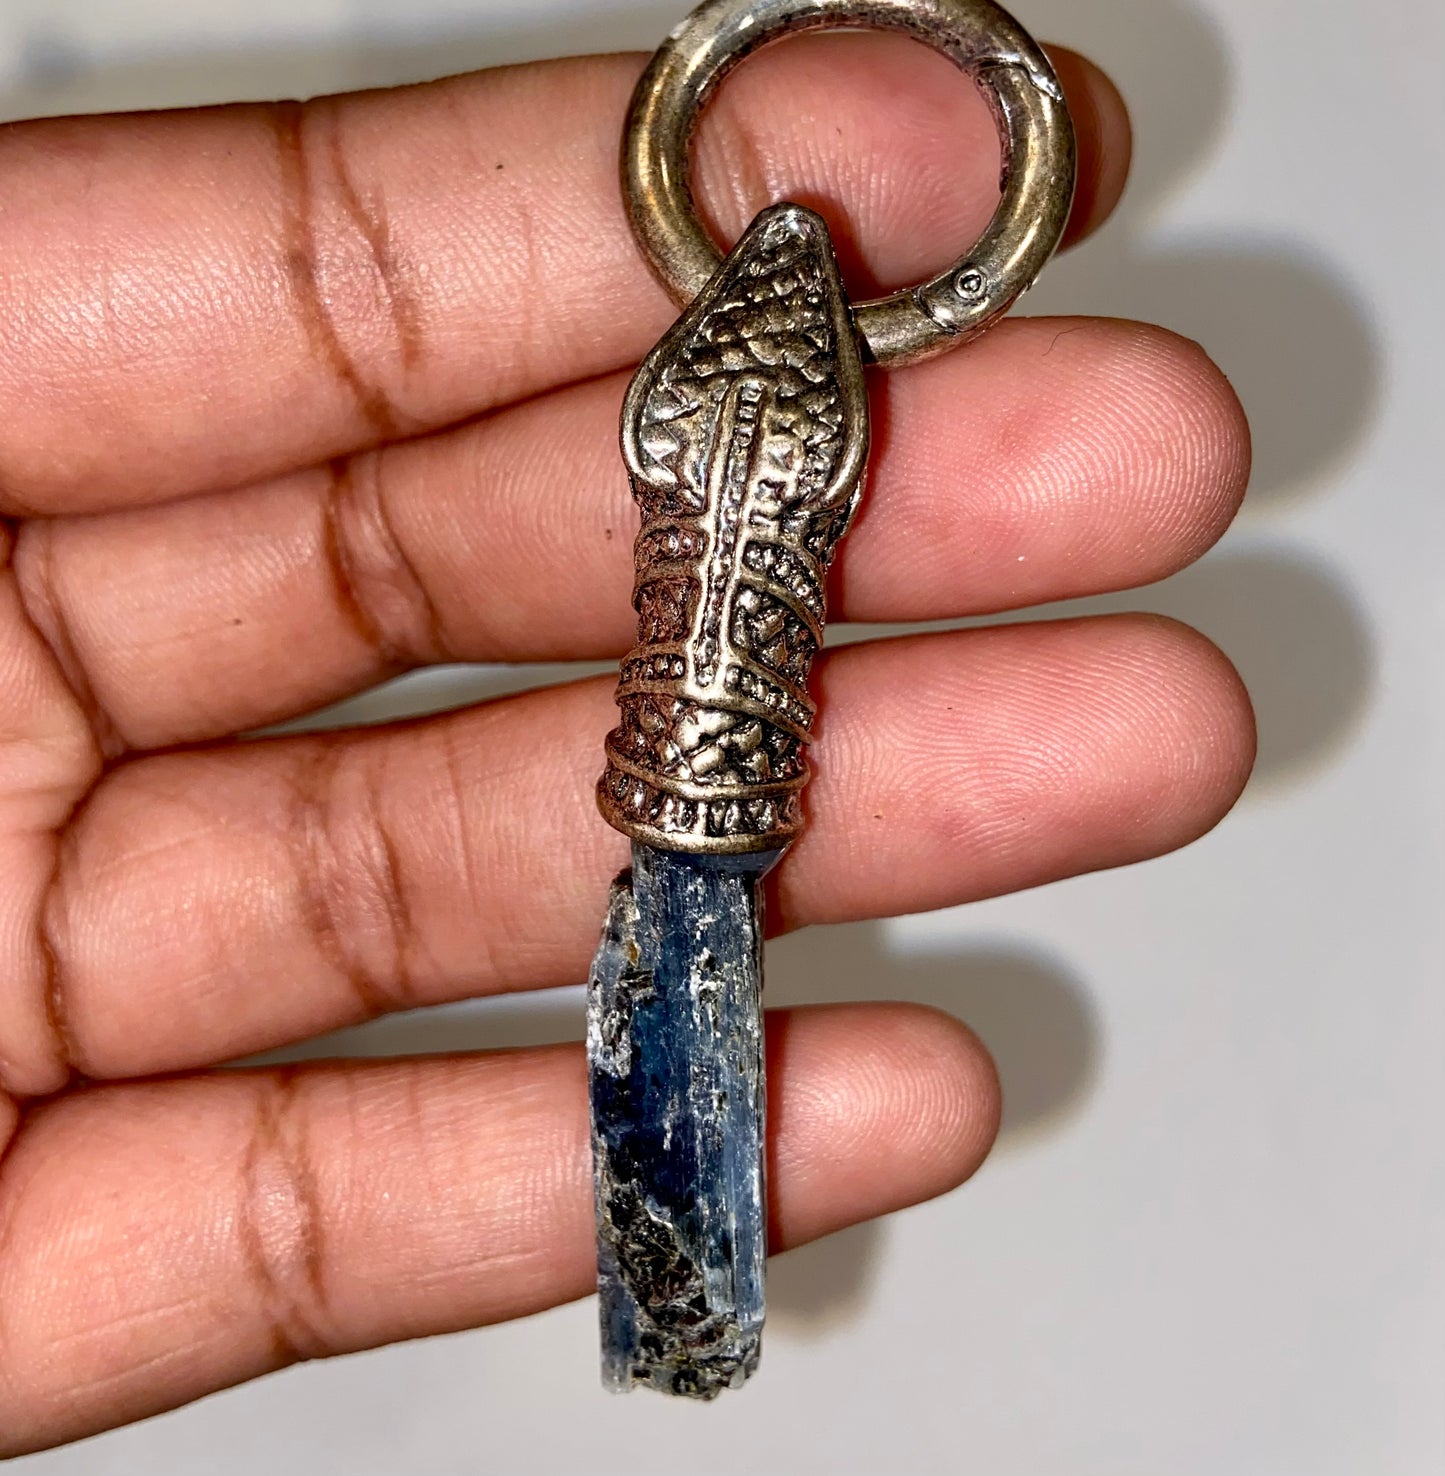 Crystal keychain